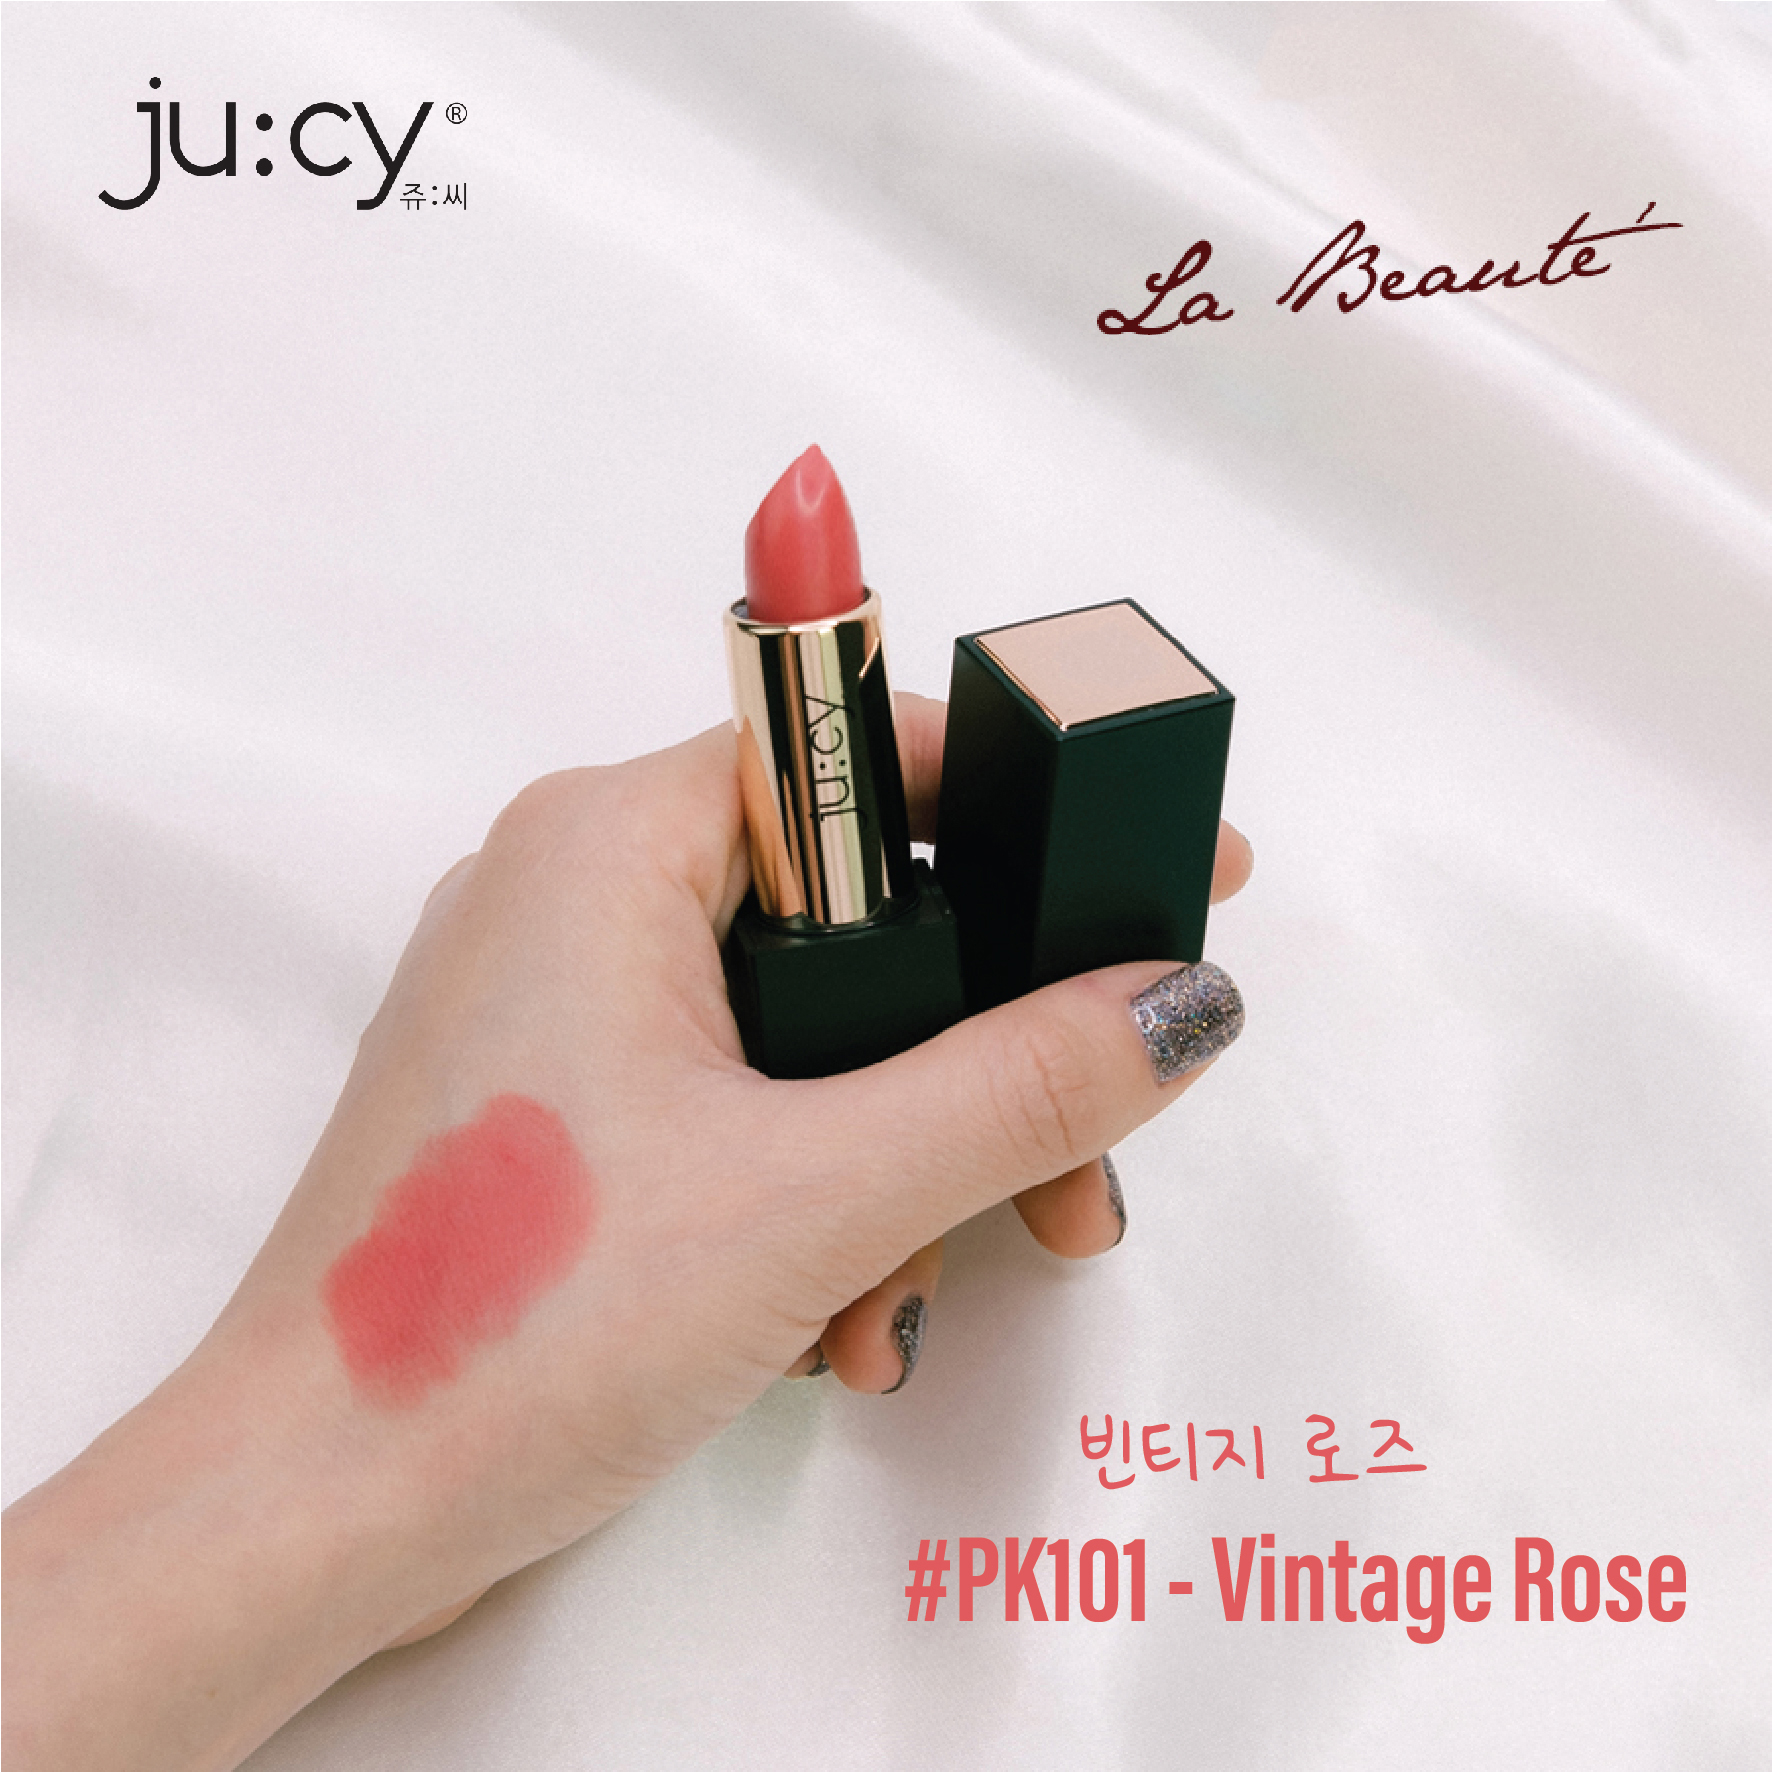 (HÀNG CHUẨN HÃNG) Son lì KHÔNG CHÌ Hàn Quốc Ju:cy Vintage Rose_Hồng Đào Đất chuẩn màu, không lộ vân, bền màu đến 10 giờ, không gây khô, thâm môi